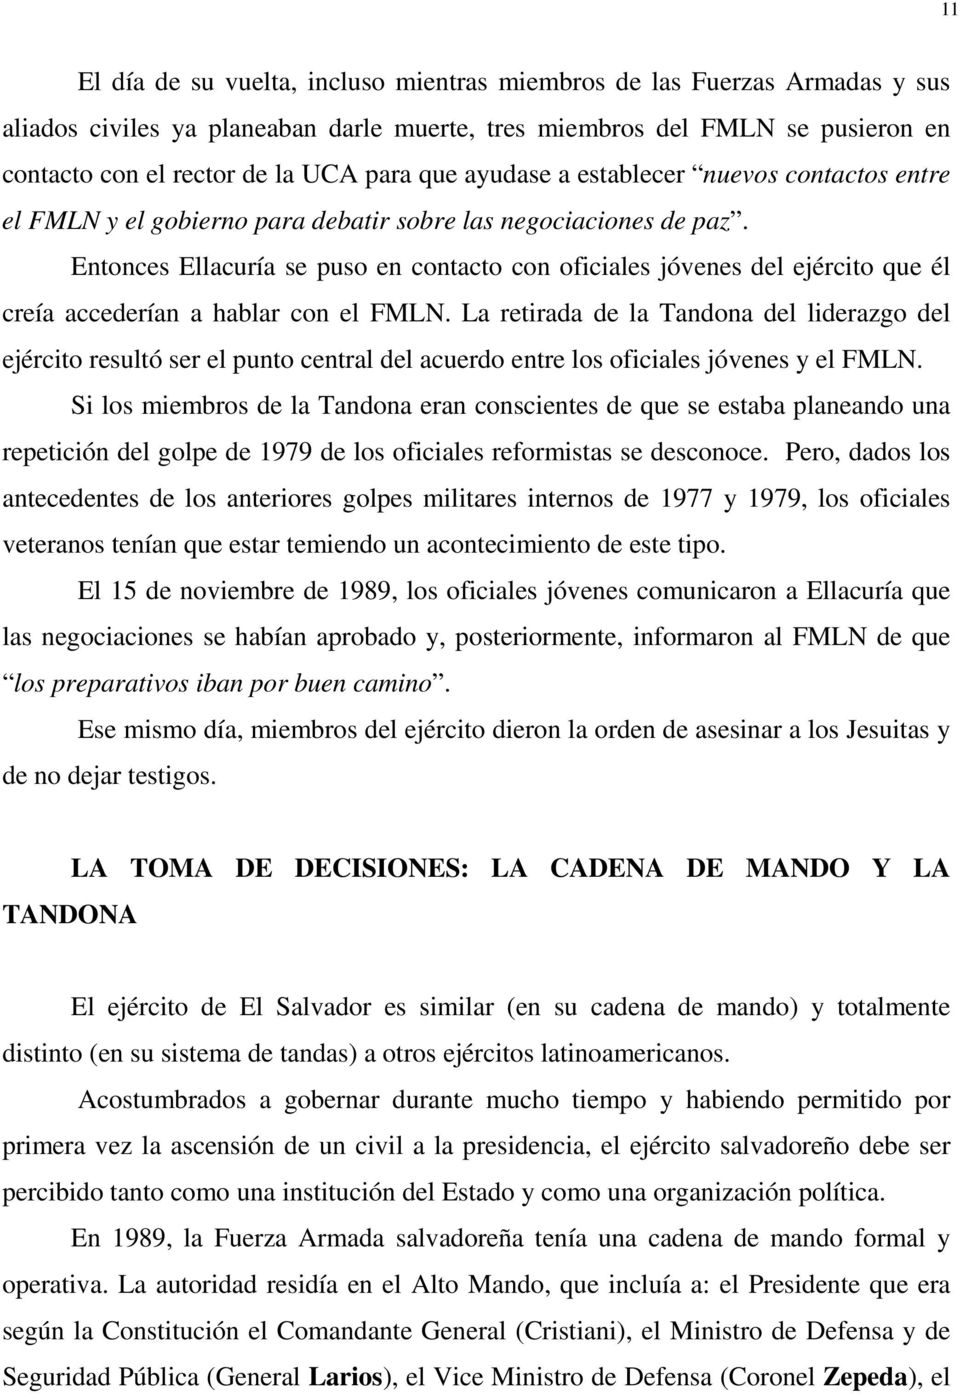 Entonces Ellacuría se puso en contacto con oficiales jóvenes del ejército que él creía accederían a hablar con el FMLN.